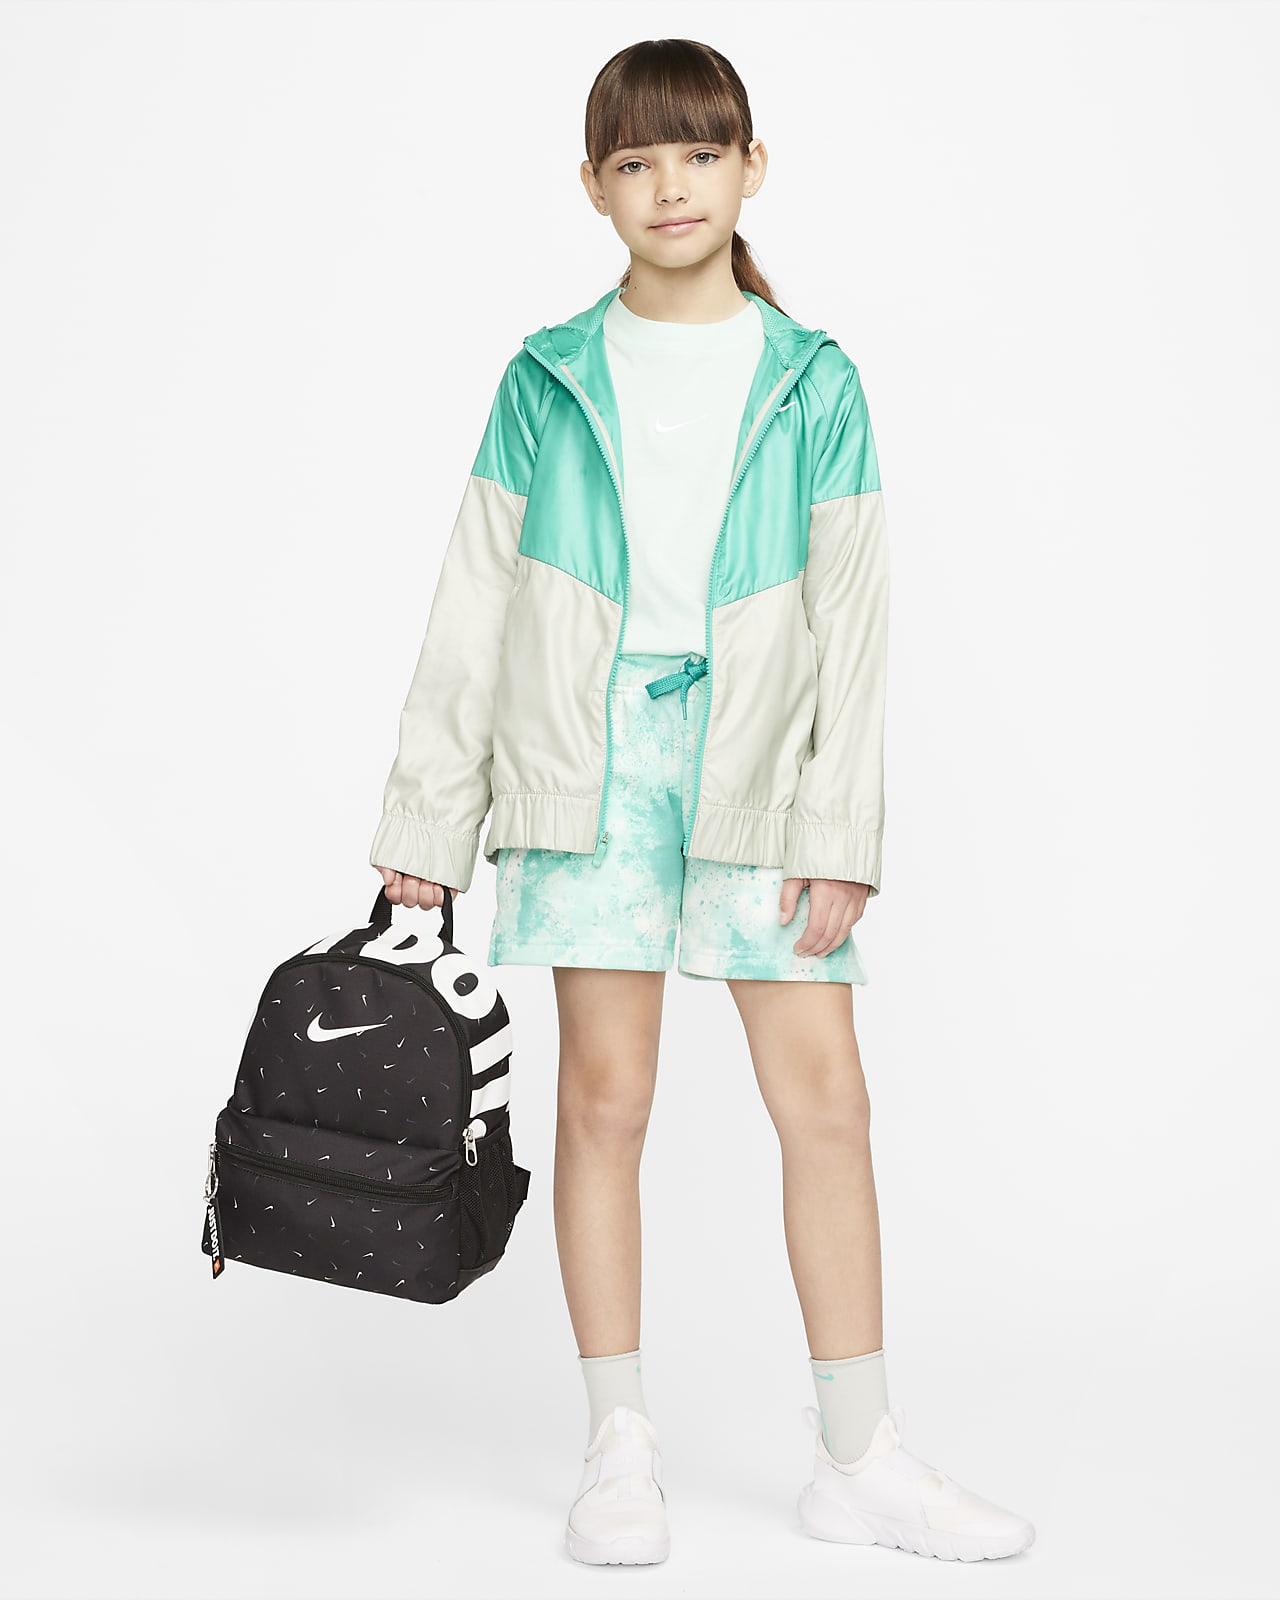 Nike Brasilia JDI Kids' Backpack (Mini) Dark grey